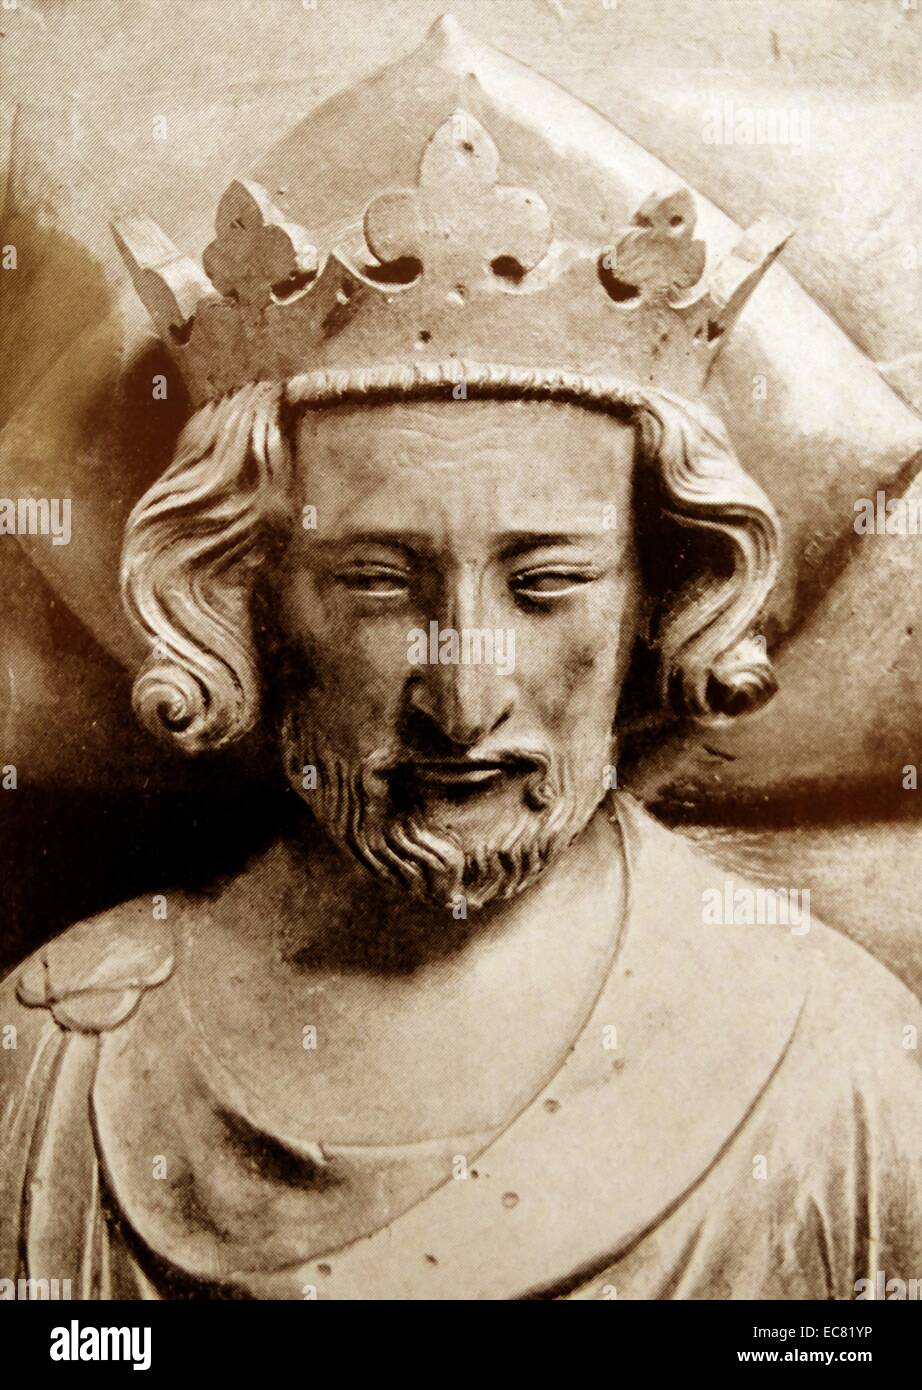 Enrico IV (15 Aprile 1367 - 20 Marzo 1413. Re di Inghilterra e signore di Irlanda (1399-1413). Egli è stato il decimo re d'Inghilterra della casa di Plantagenet Foto Stock